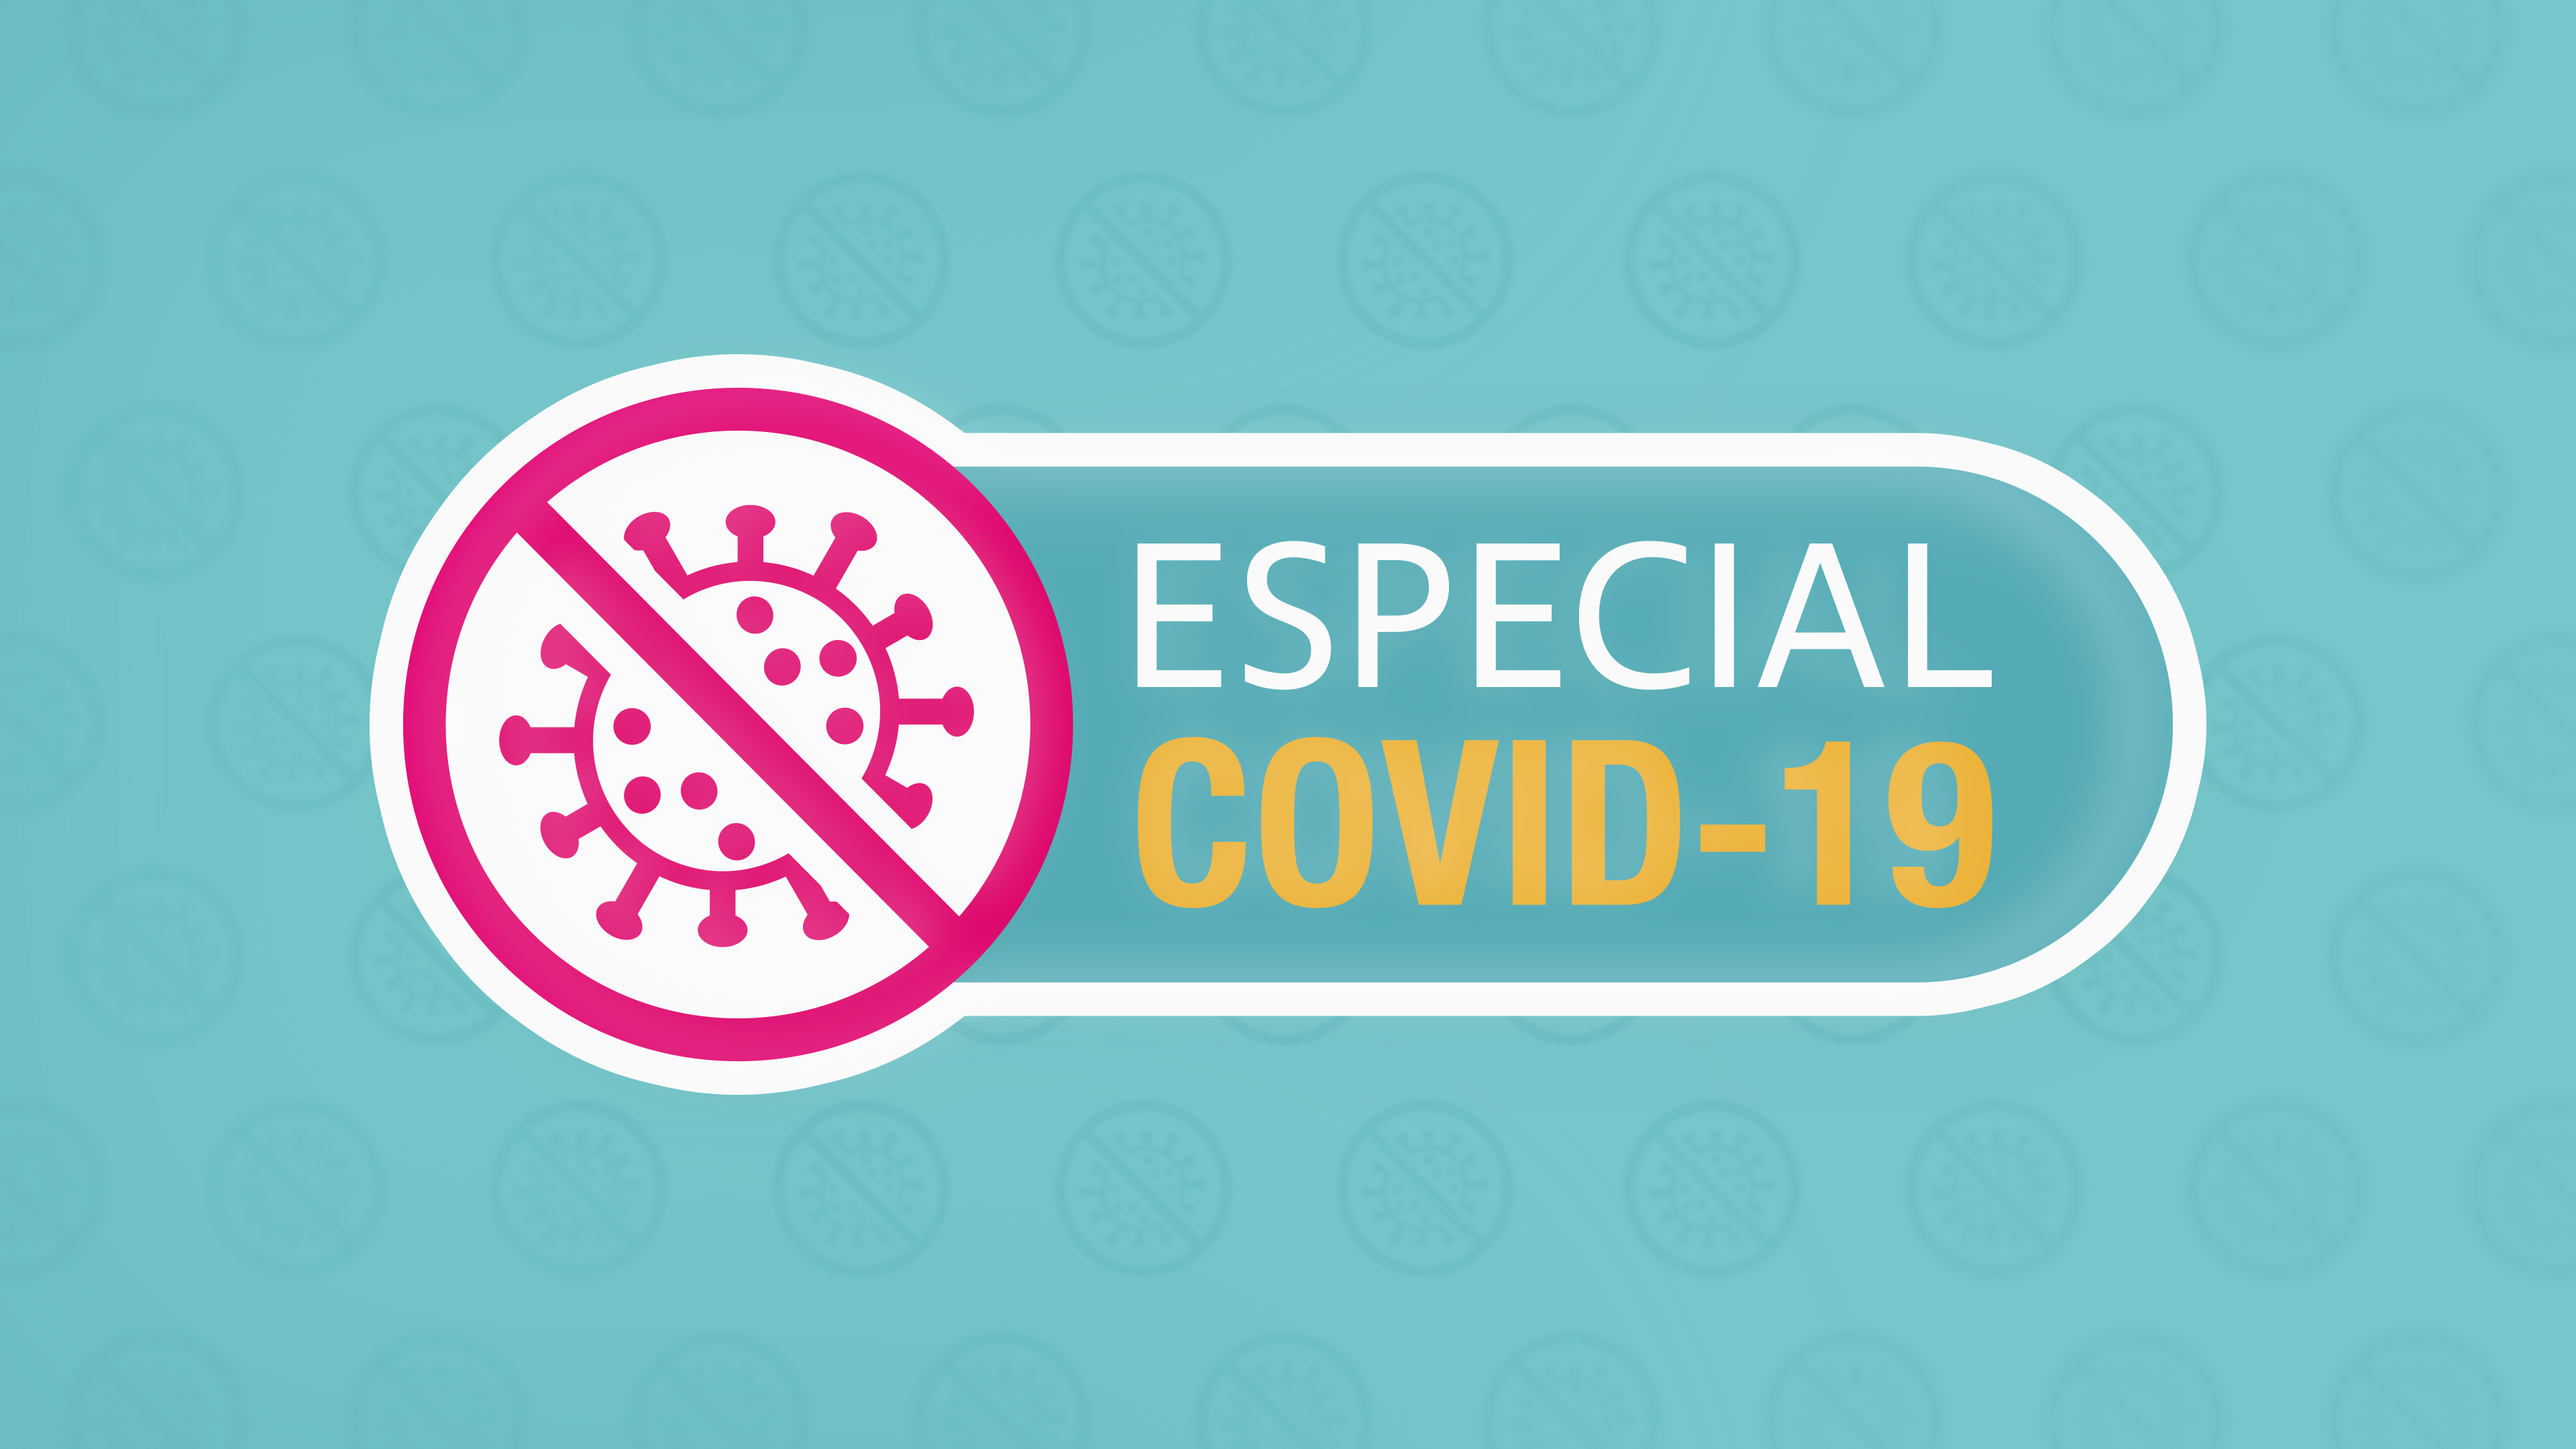 Esclareça suas dúvidas sobre vacinação contra a Covid-19